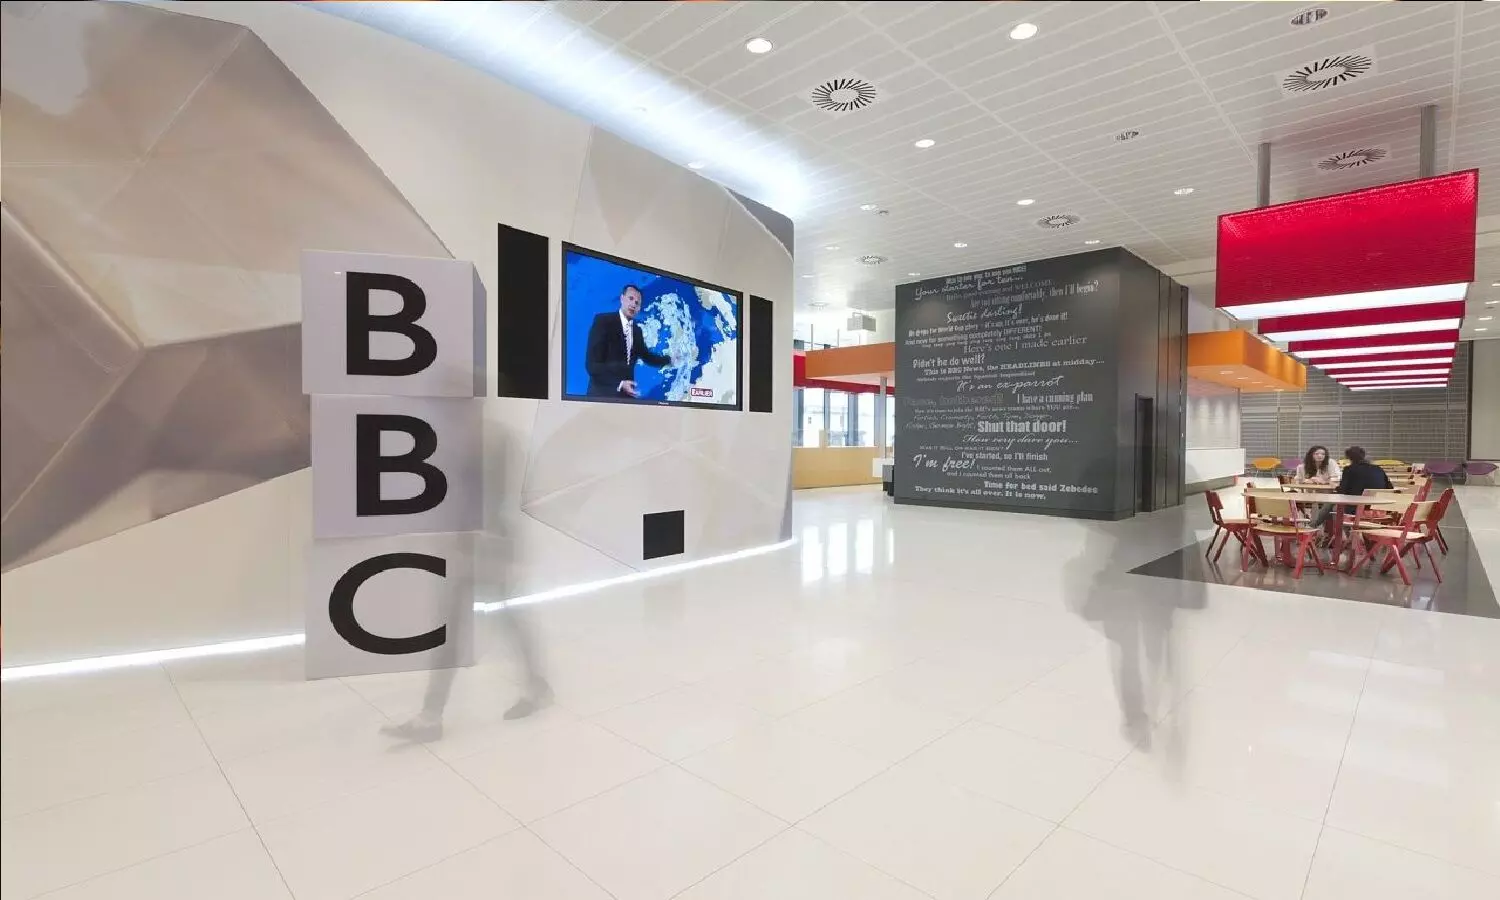 BBC ऑफिस में दूसरे दिन भी जारी है IT की रैड, फाइनेंस डिपार्टमेंट के स्टाफ के मोबाइल, लैपटॉप-डेस्कटॉप जब्त